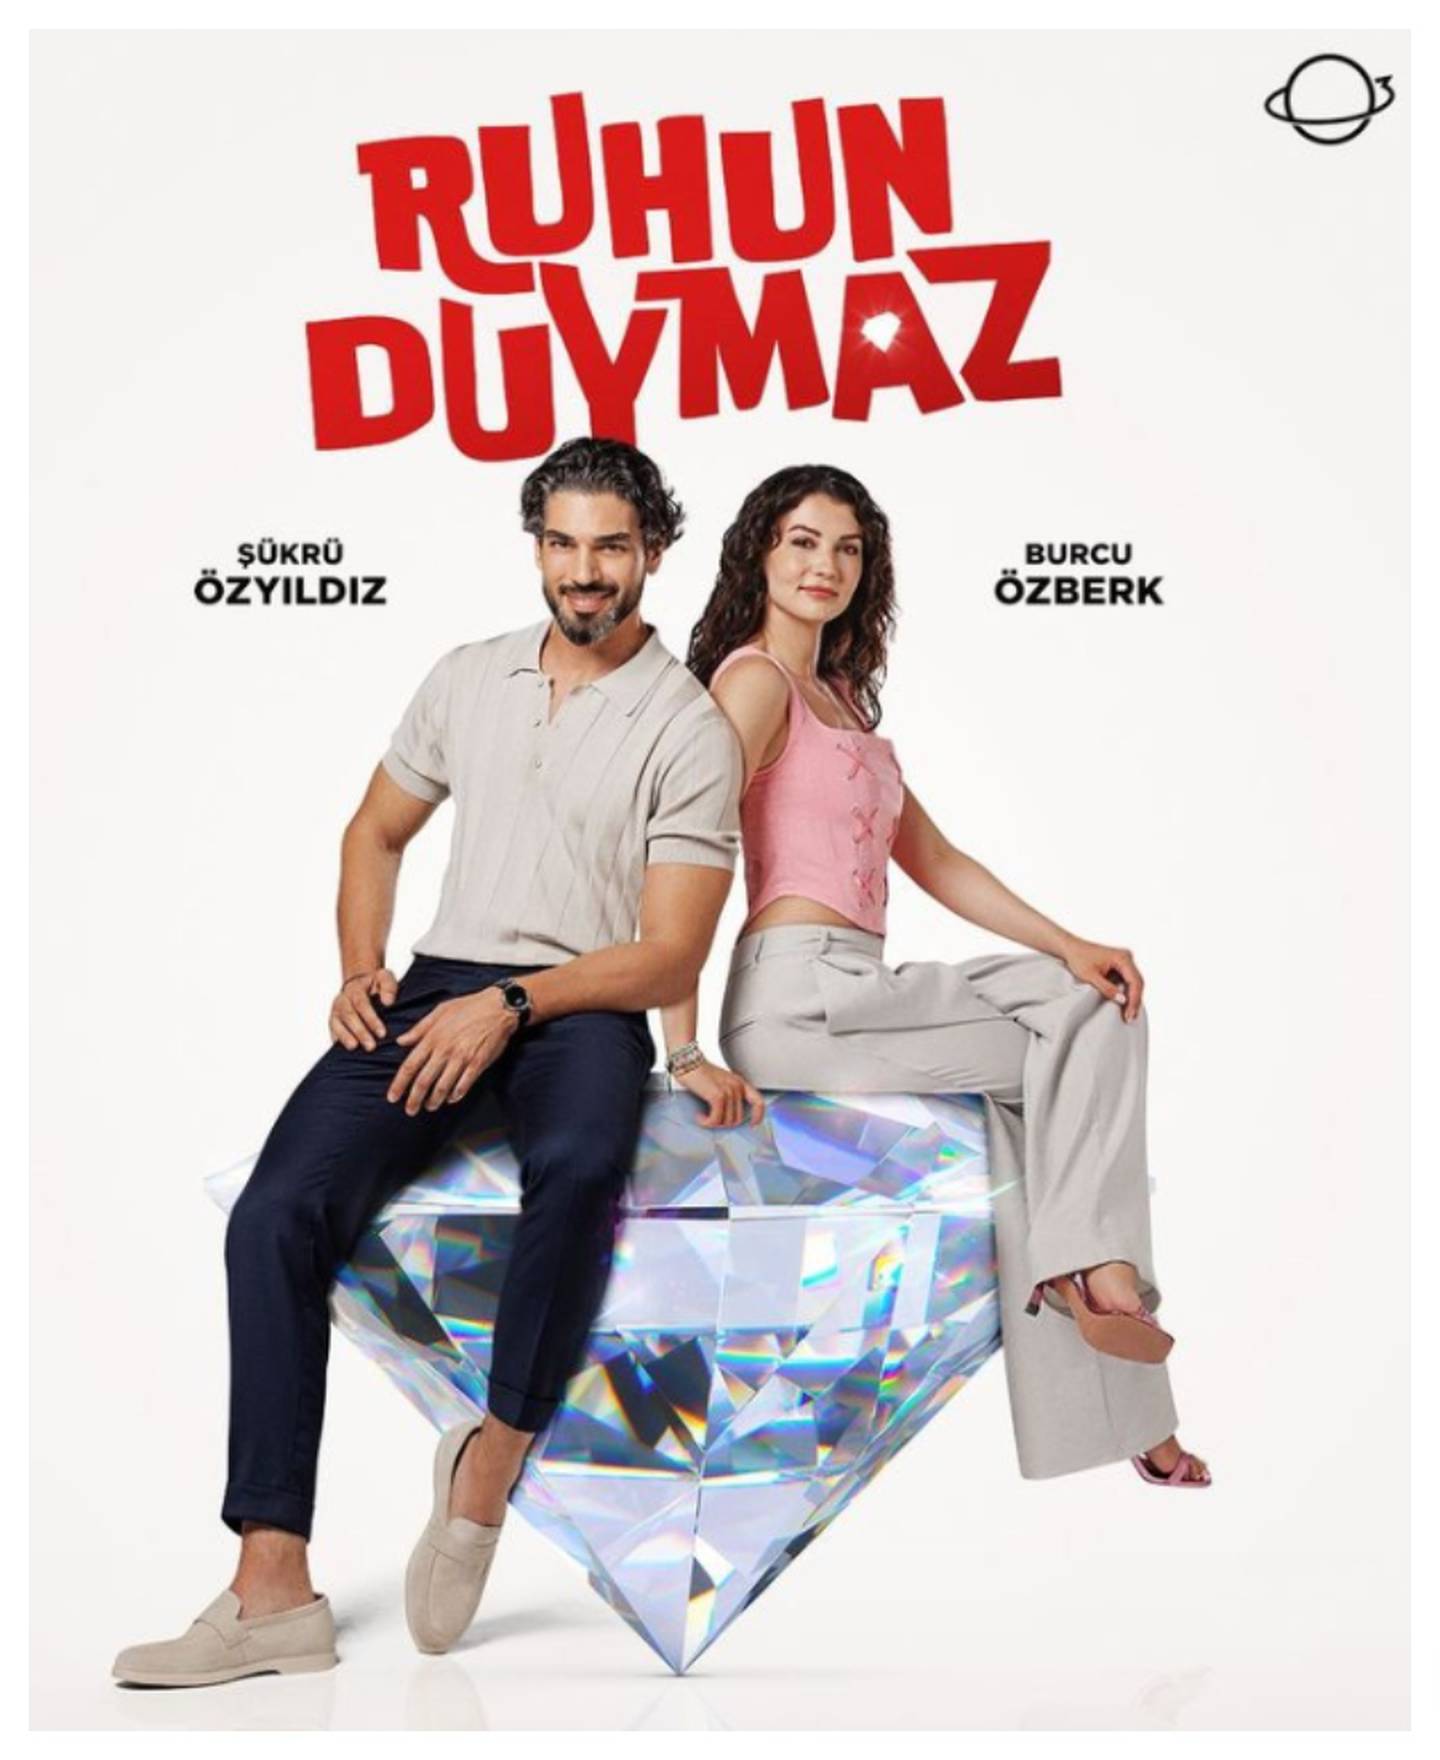 Burcu Özberk estrena la serie Ruhun Duymaz este 24 de julio.